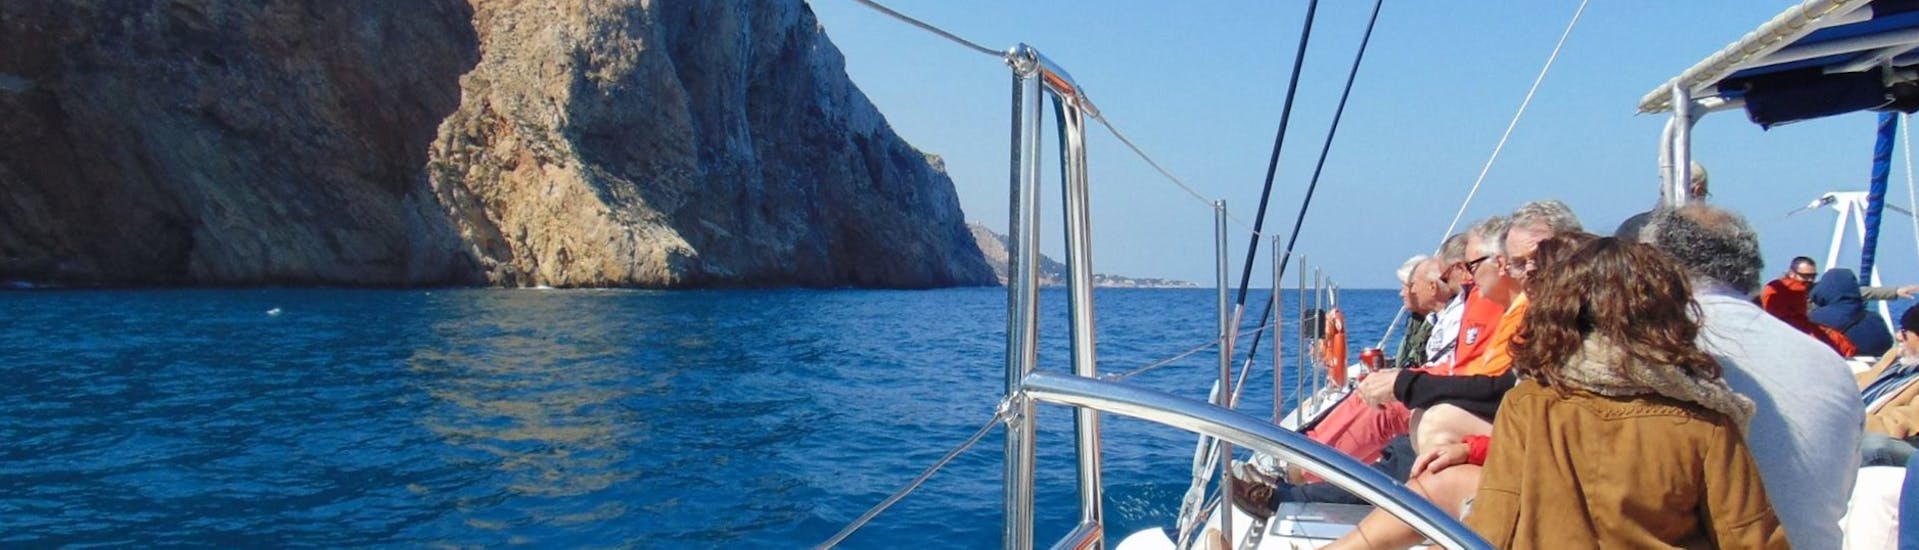 Die Teilnehmer haben Spaß an Bord eines Öko-Segelkatamarans während eines Segeltörns entlang der Bucht von Malaga mit Mundo Marino Costa del Sol.